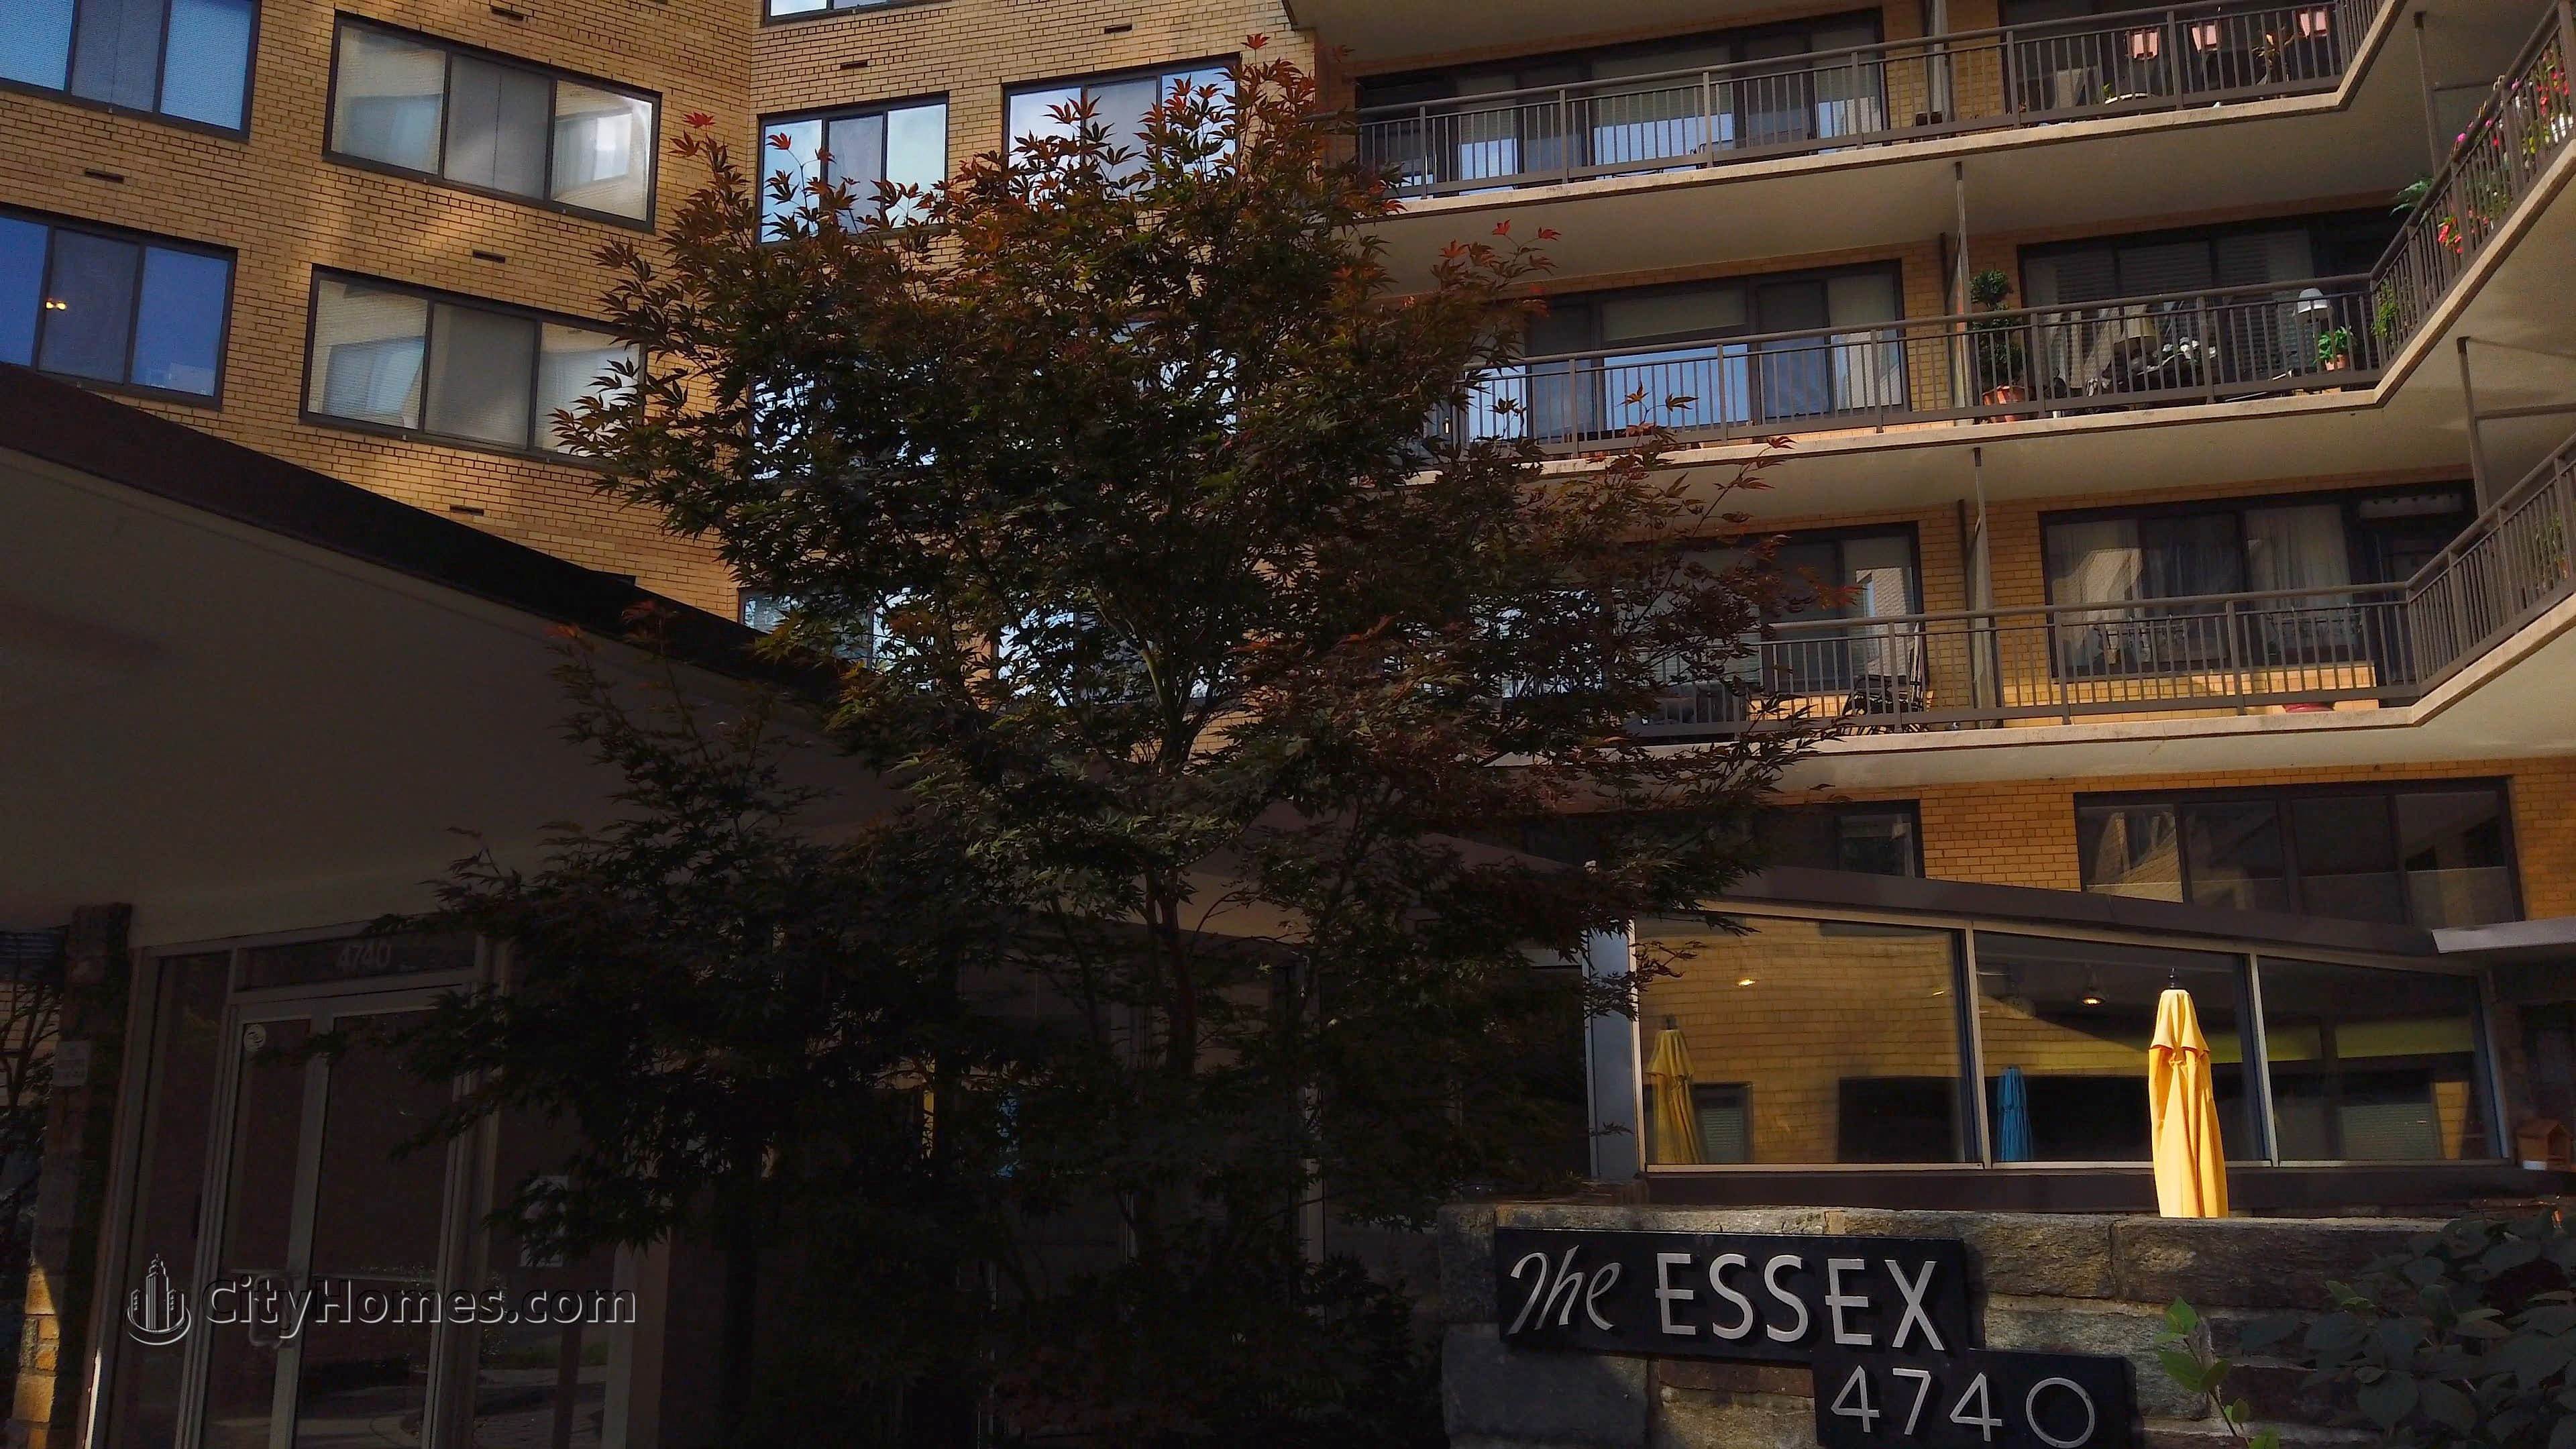 The Essex bâtiment à 4740 Connecticut Ave NW, Wakefield, Washington, DC 20008